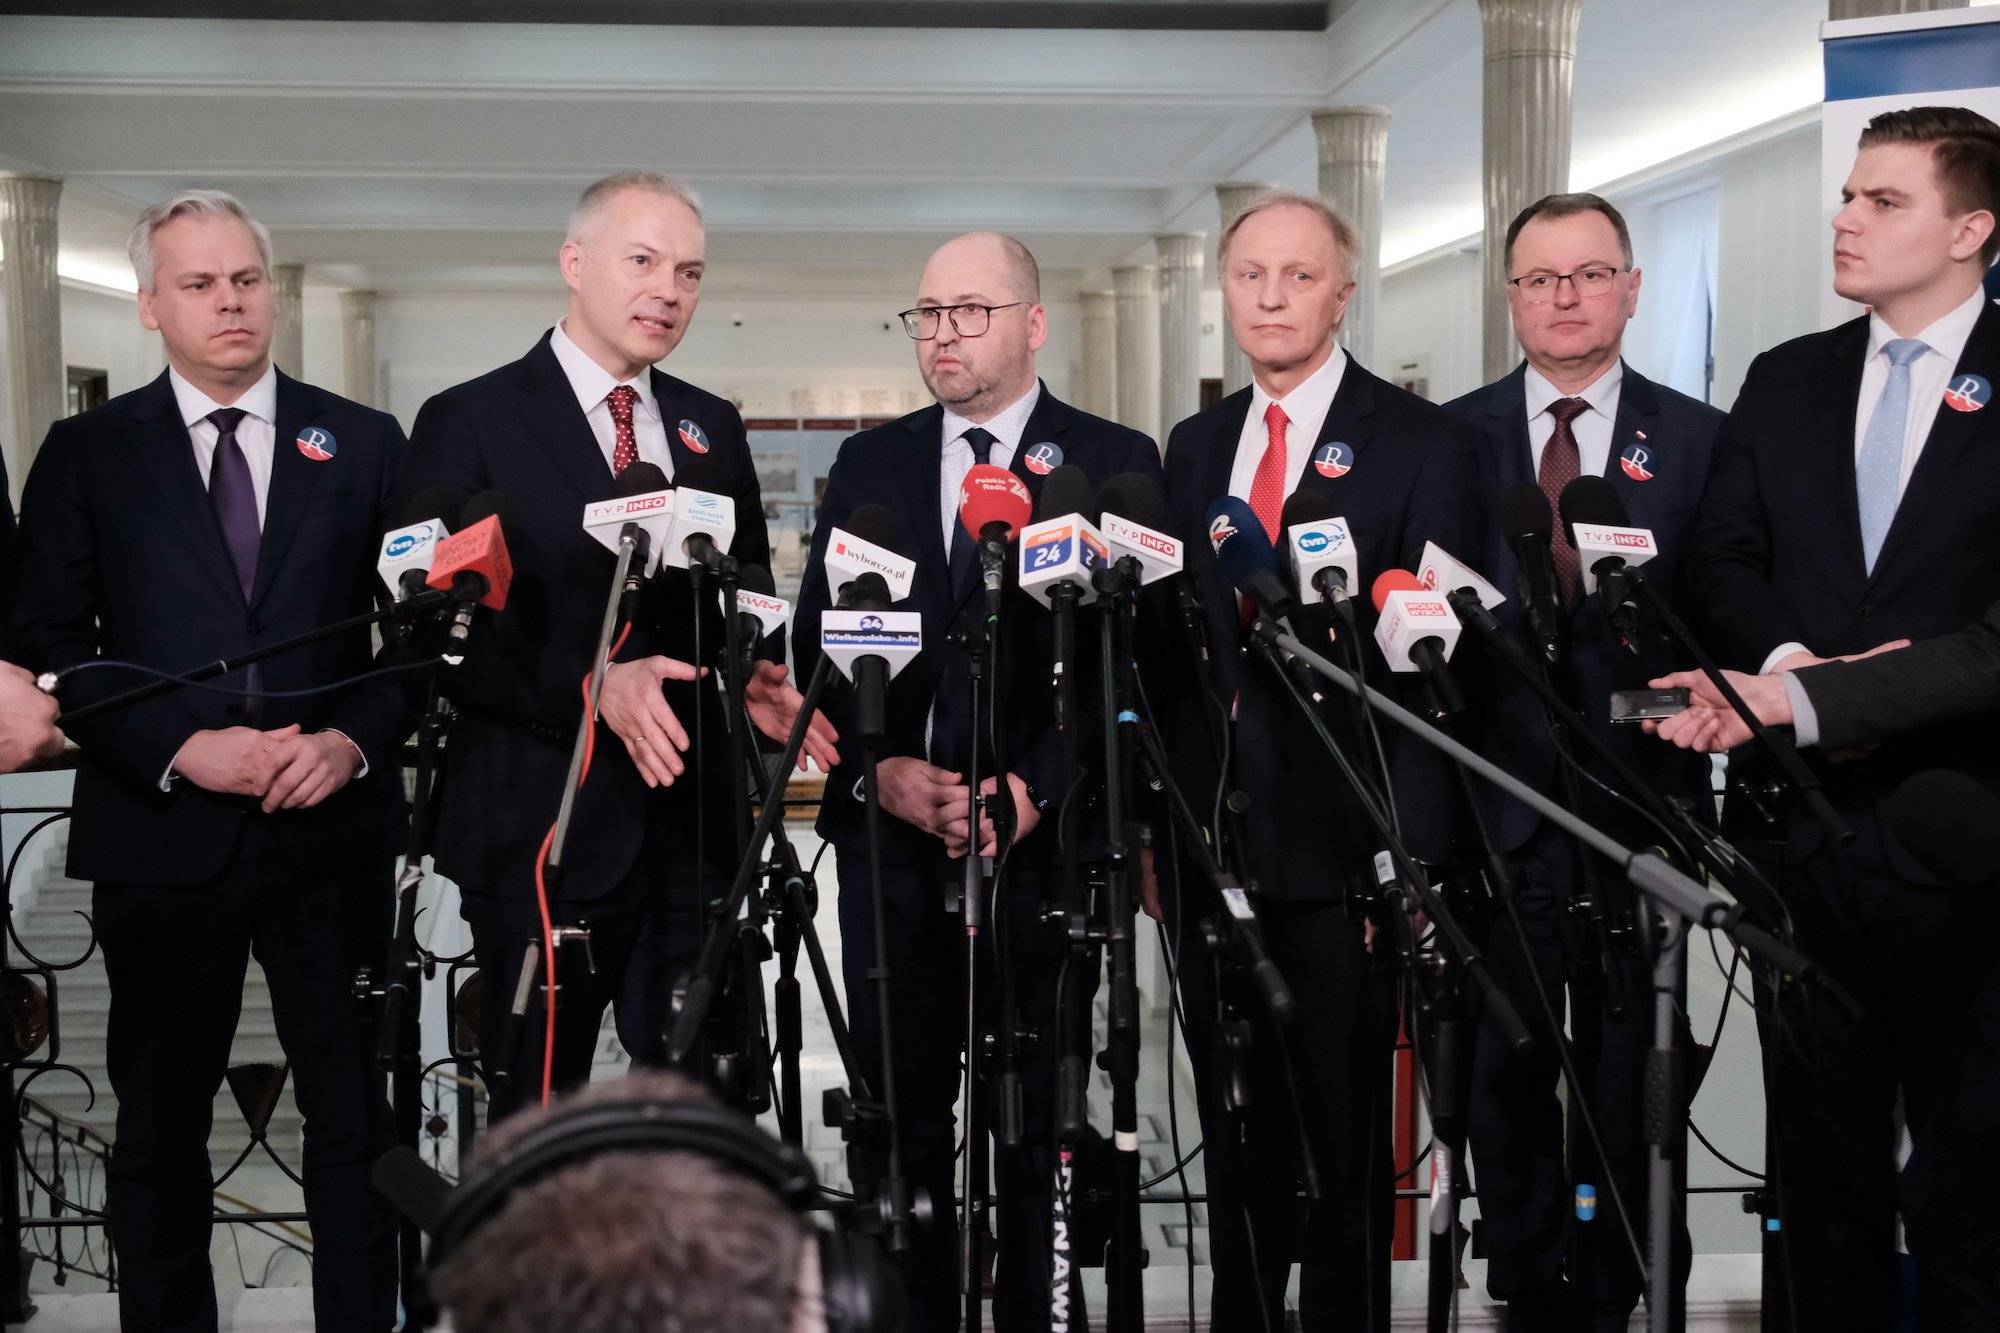 Członkowie Partii Republikańskiej w ciemnych garniturach przemawiają na konferencji prasowej w Sejmie.